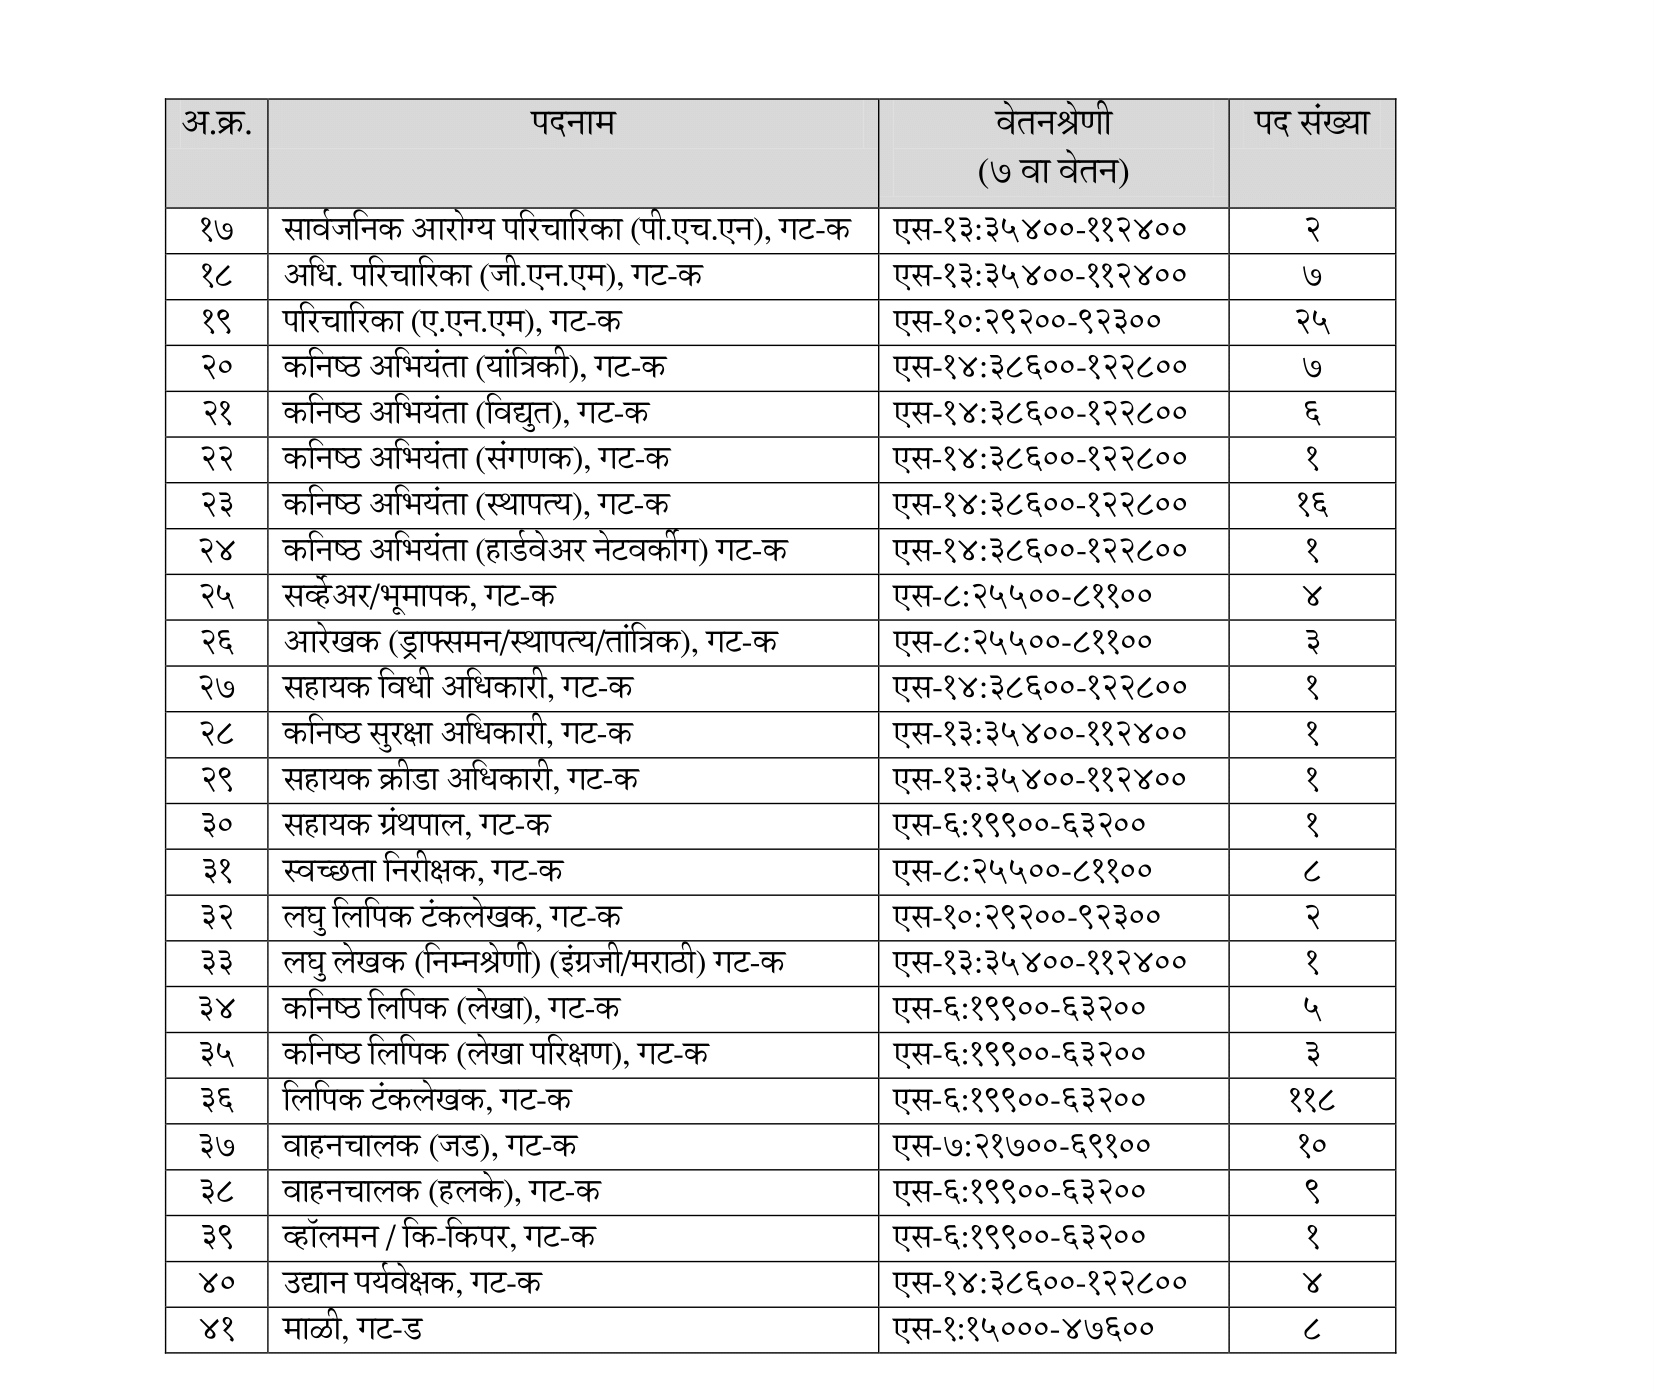 Panvel Mahanagarpalika Recruitment 2023